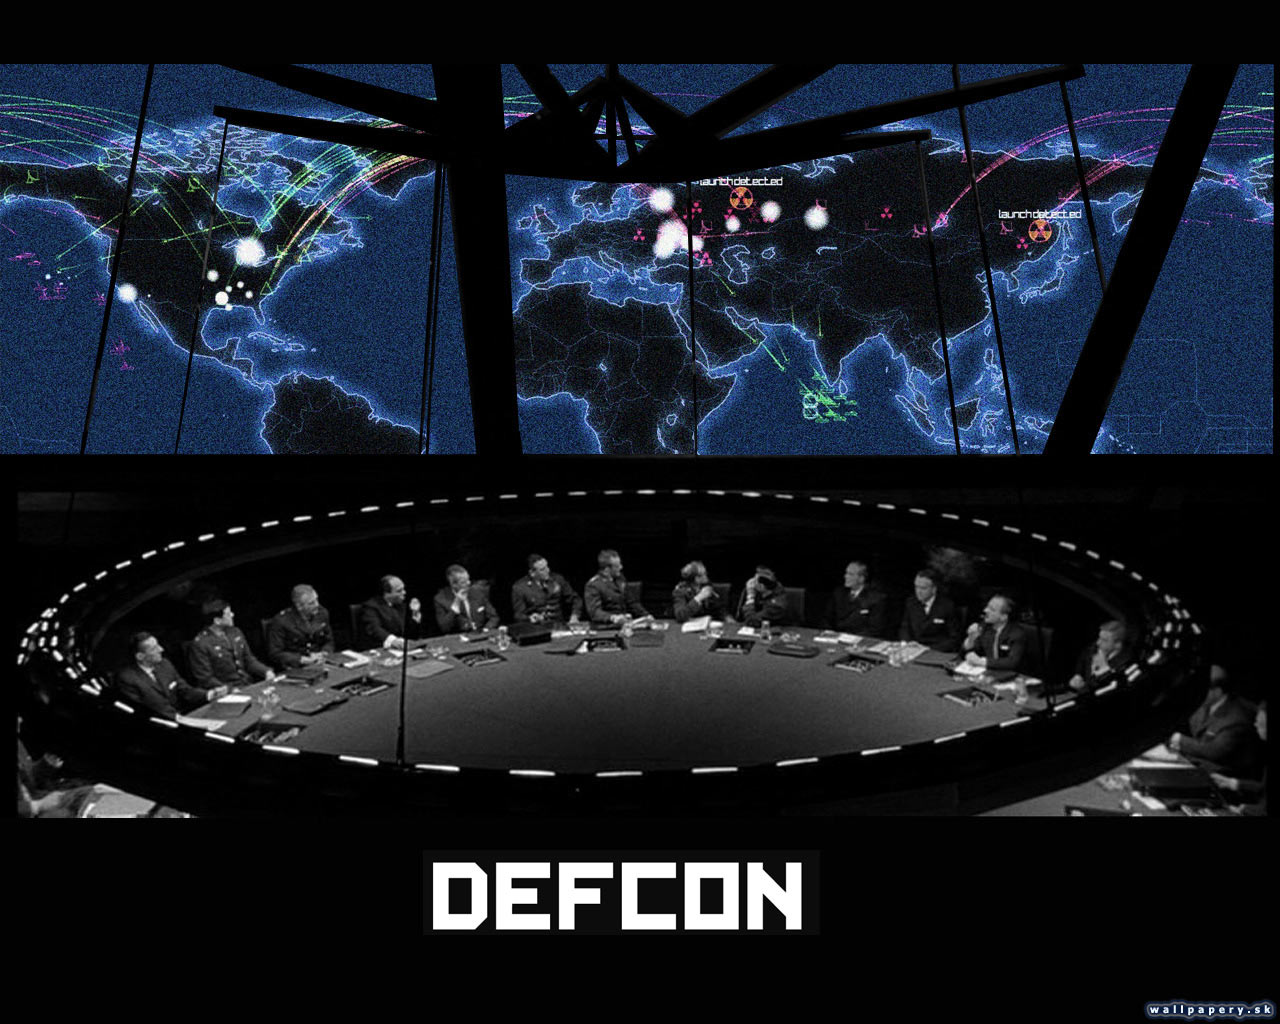 Defcon - Everybody dies - wallpaper 7